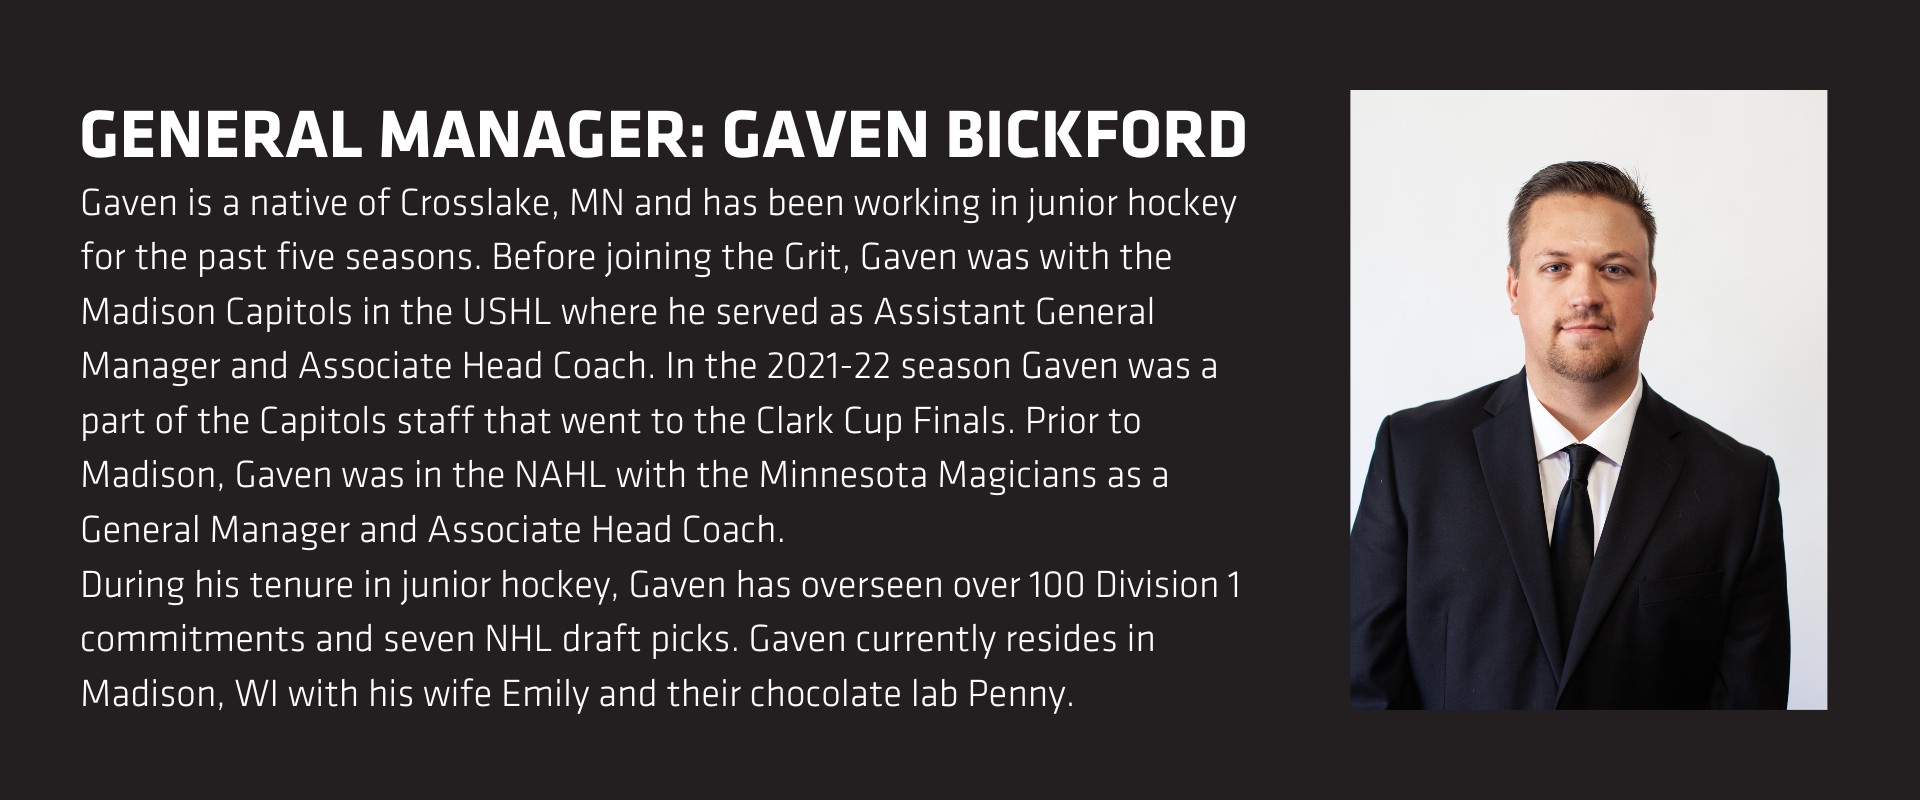 General Manager: Gaven Bickford